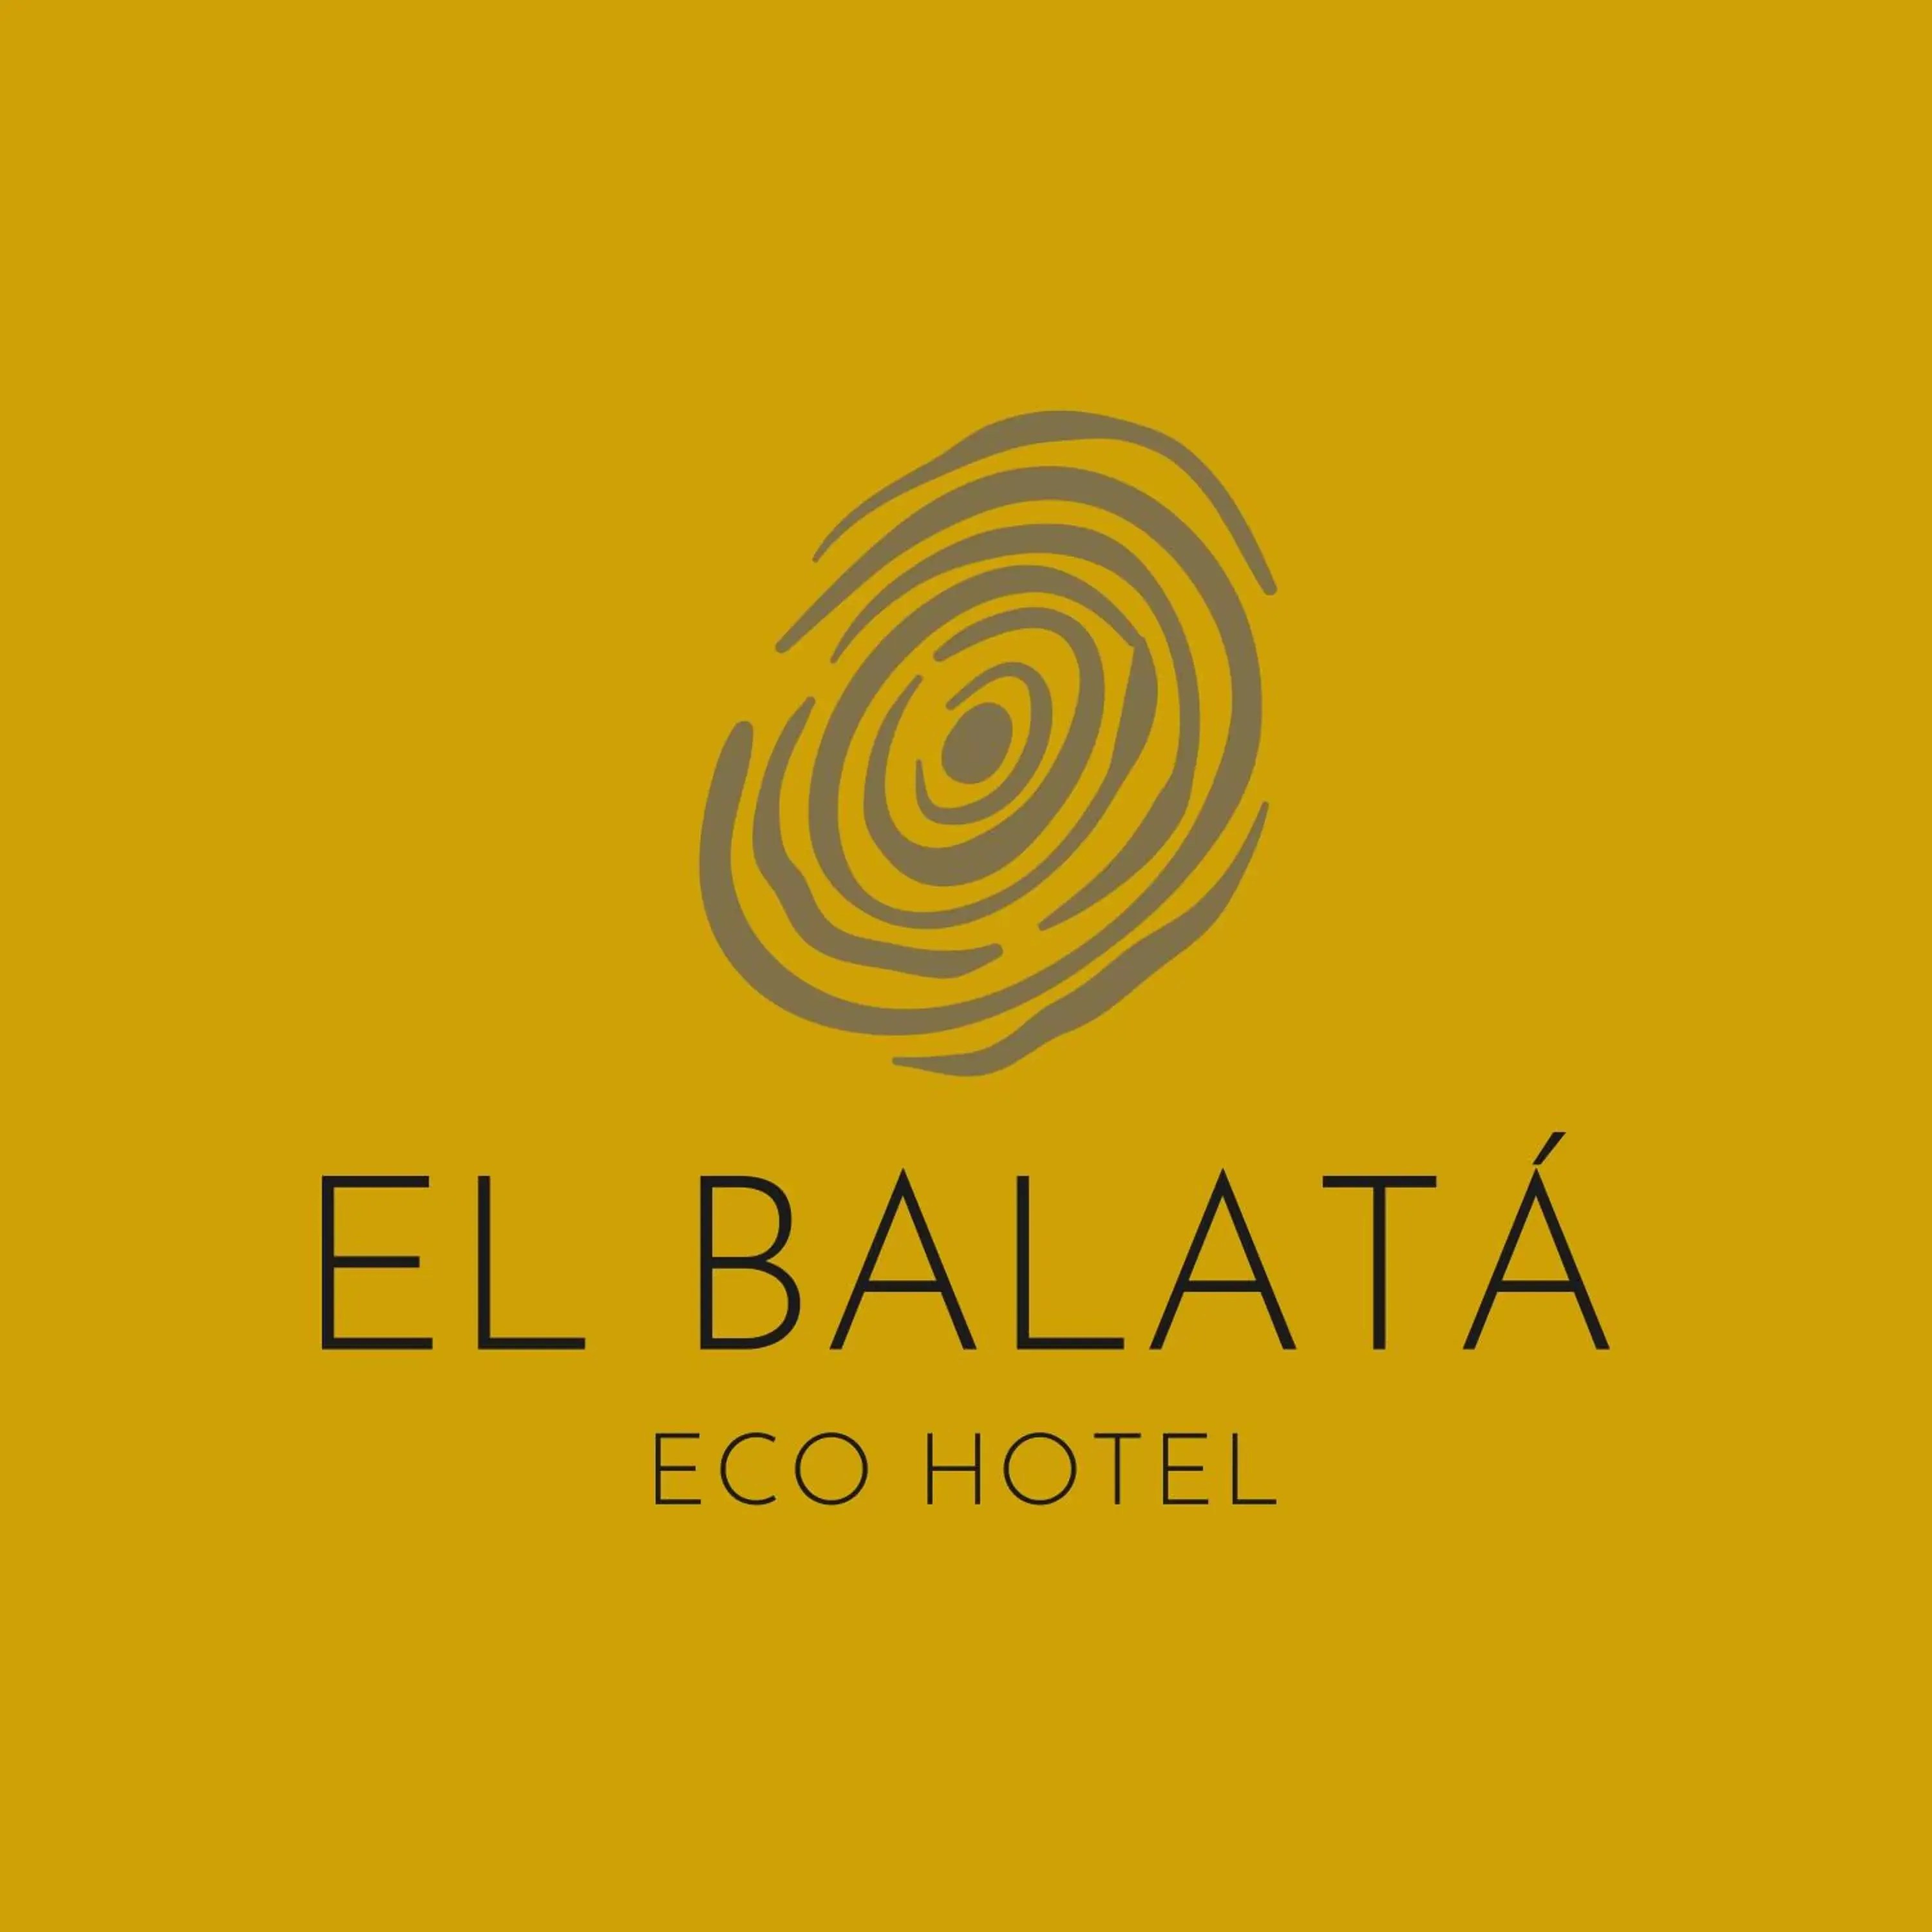 Property logo or sign in Residencia El Balatà